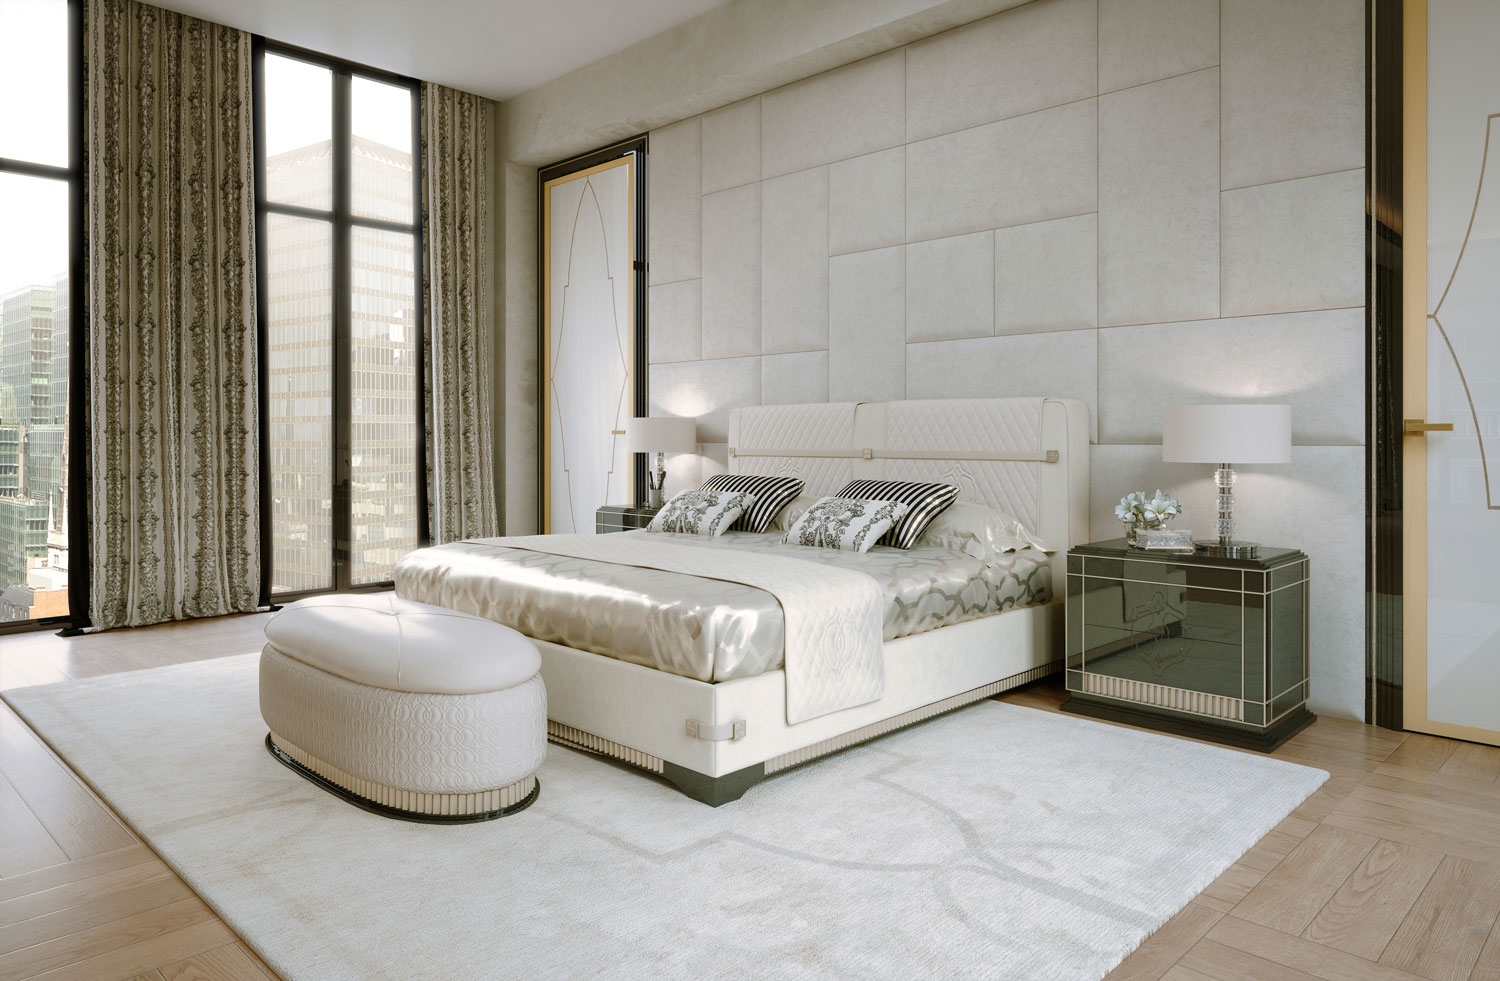 bedrooms luxury complements